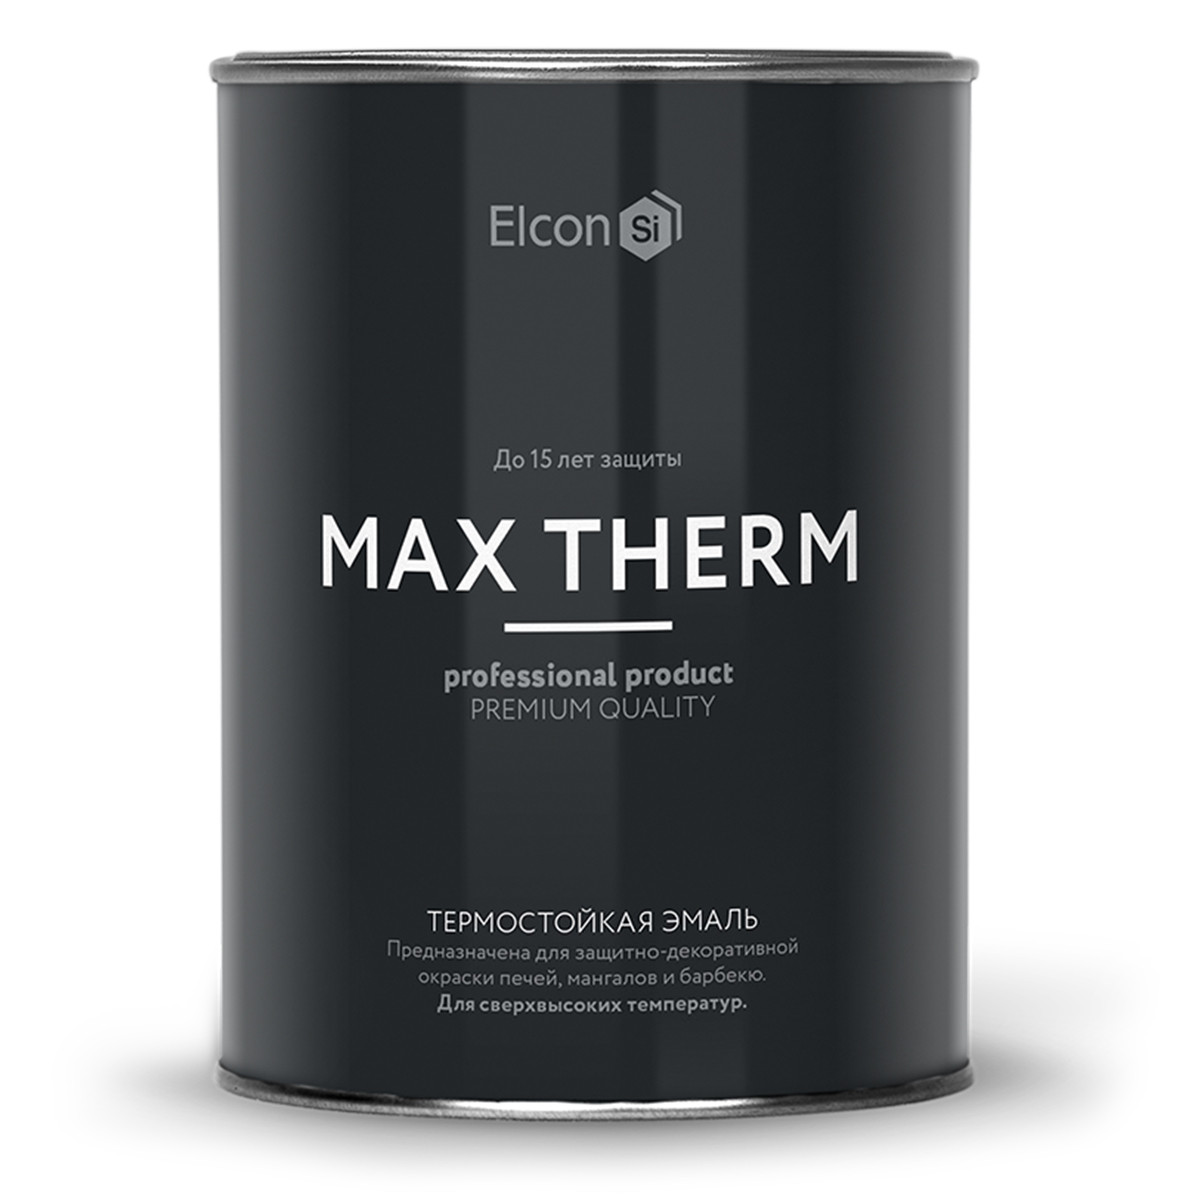 Термостойкая эмаль Elcon Max Therm  (термостойкость до 600°С)